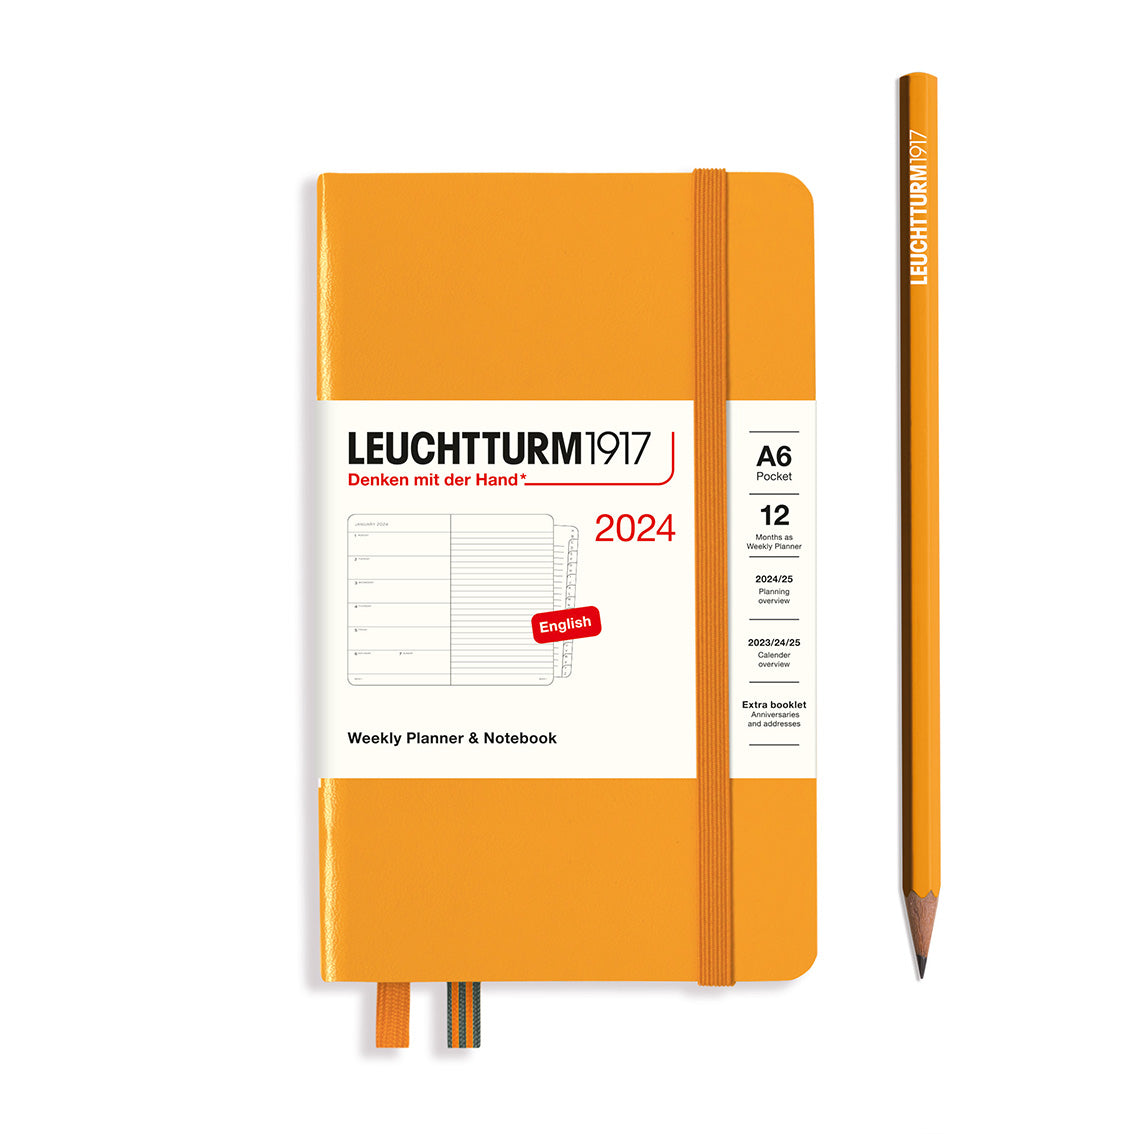 Leuchtturm Weekly Planner & Notebook - Pocket (A6) 3 1/2' x 6